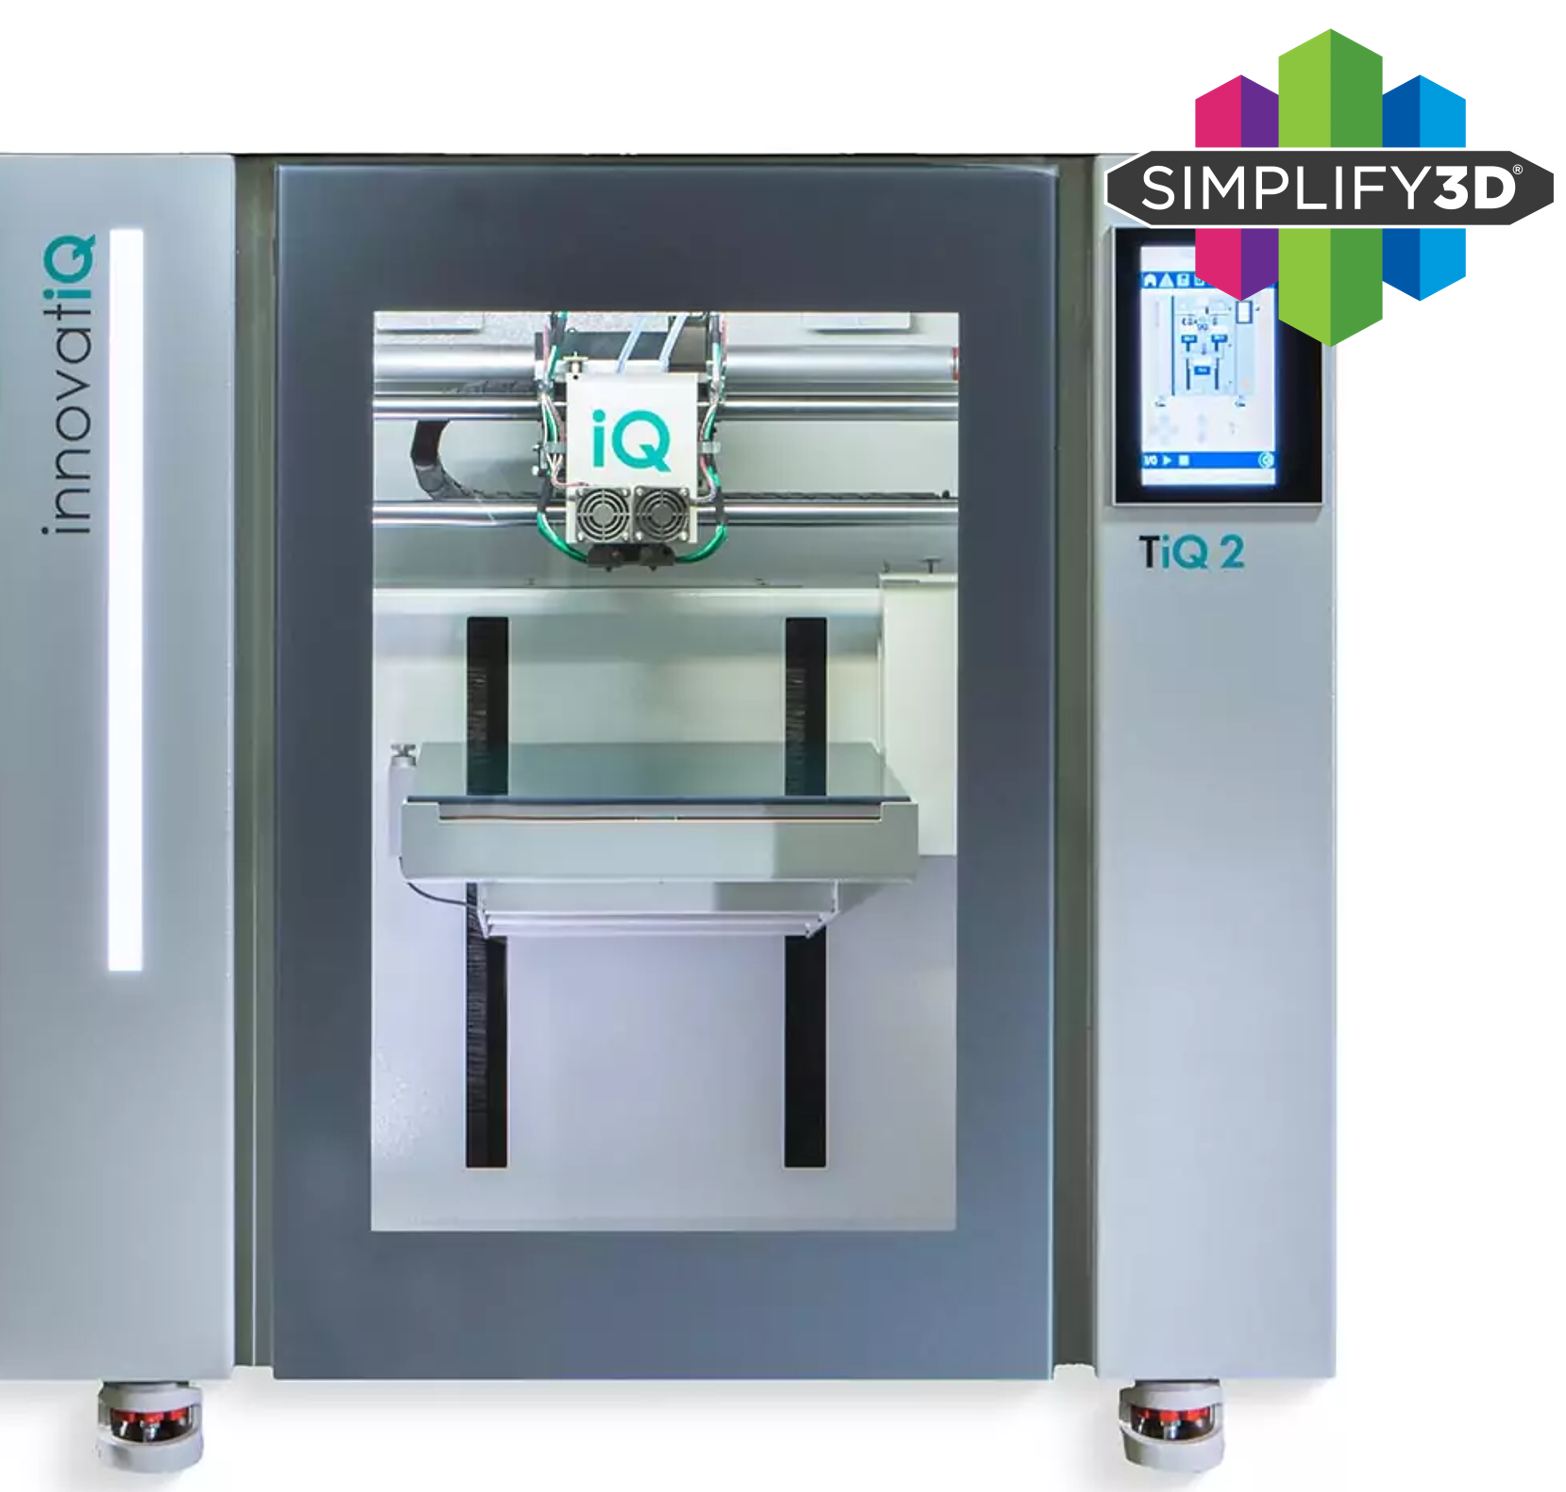 TiQ2 Drucker von innovatiQ, Bauraumgrösse 330x330x300mm. 